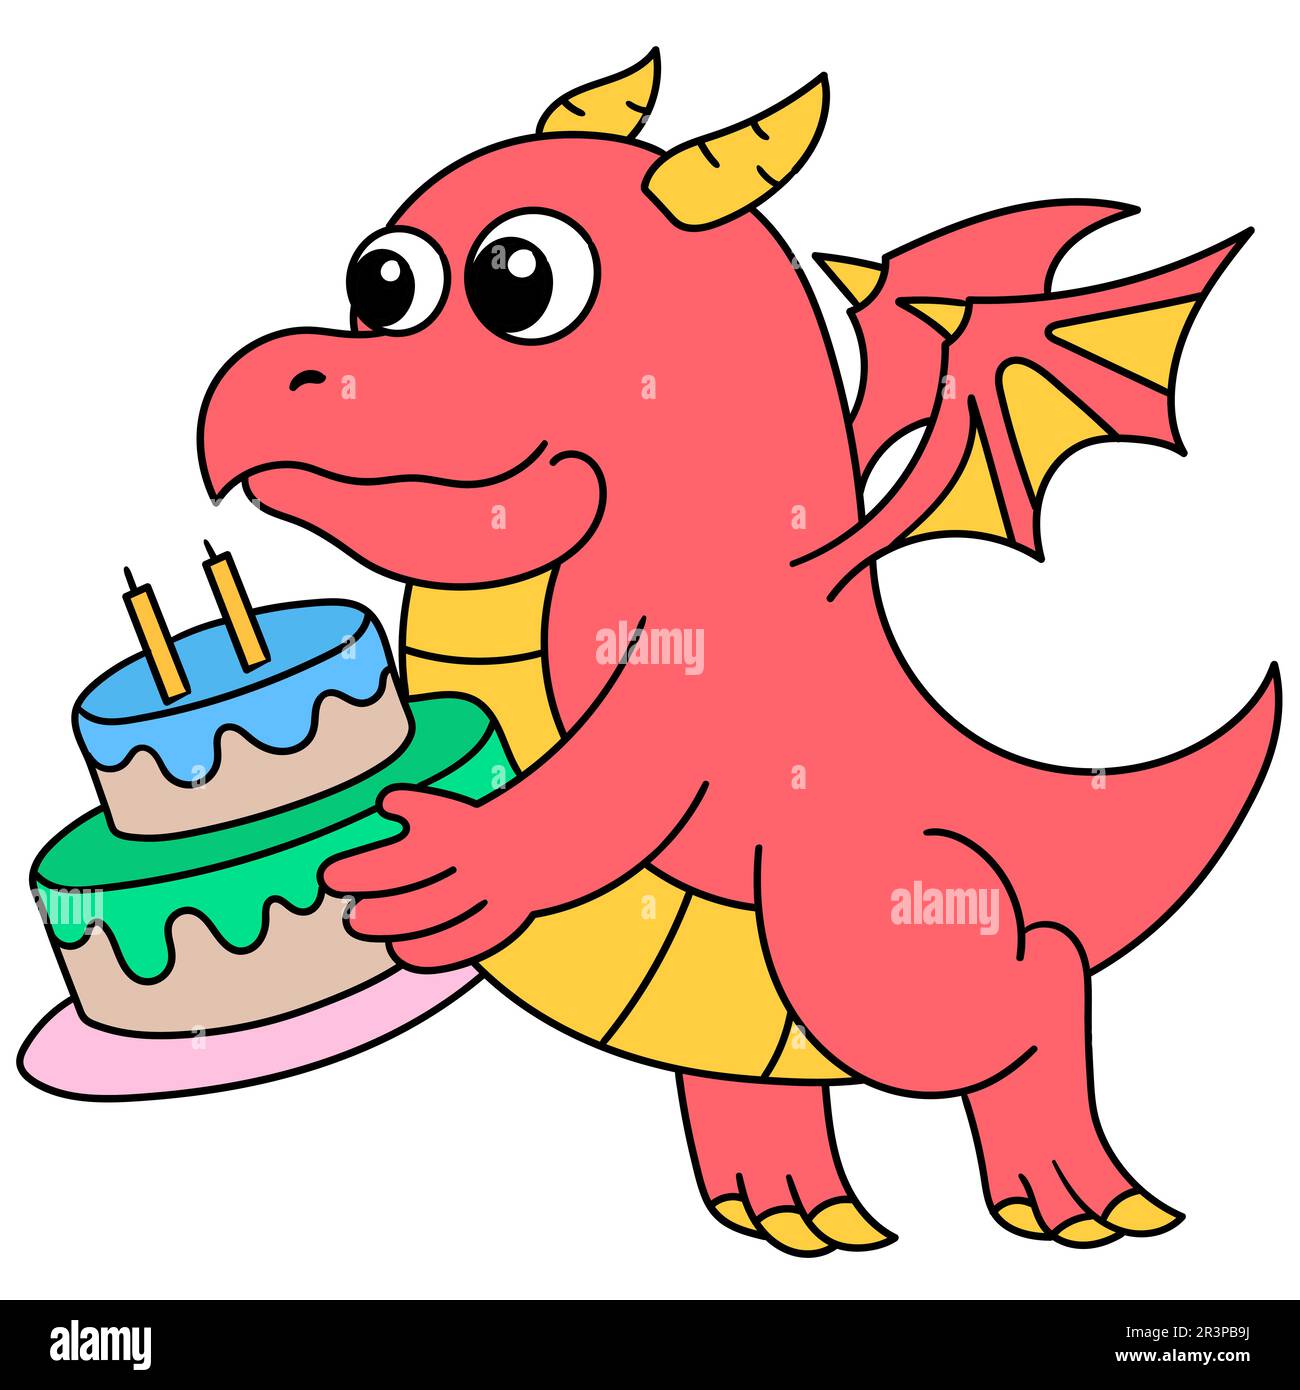 Un dragon volant a apporté un gâteau d'anniversaire pour son ami, doodle kawaii. icône doodle Banque D'Images